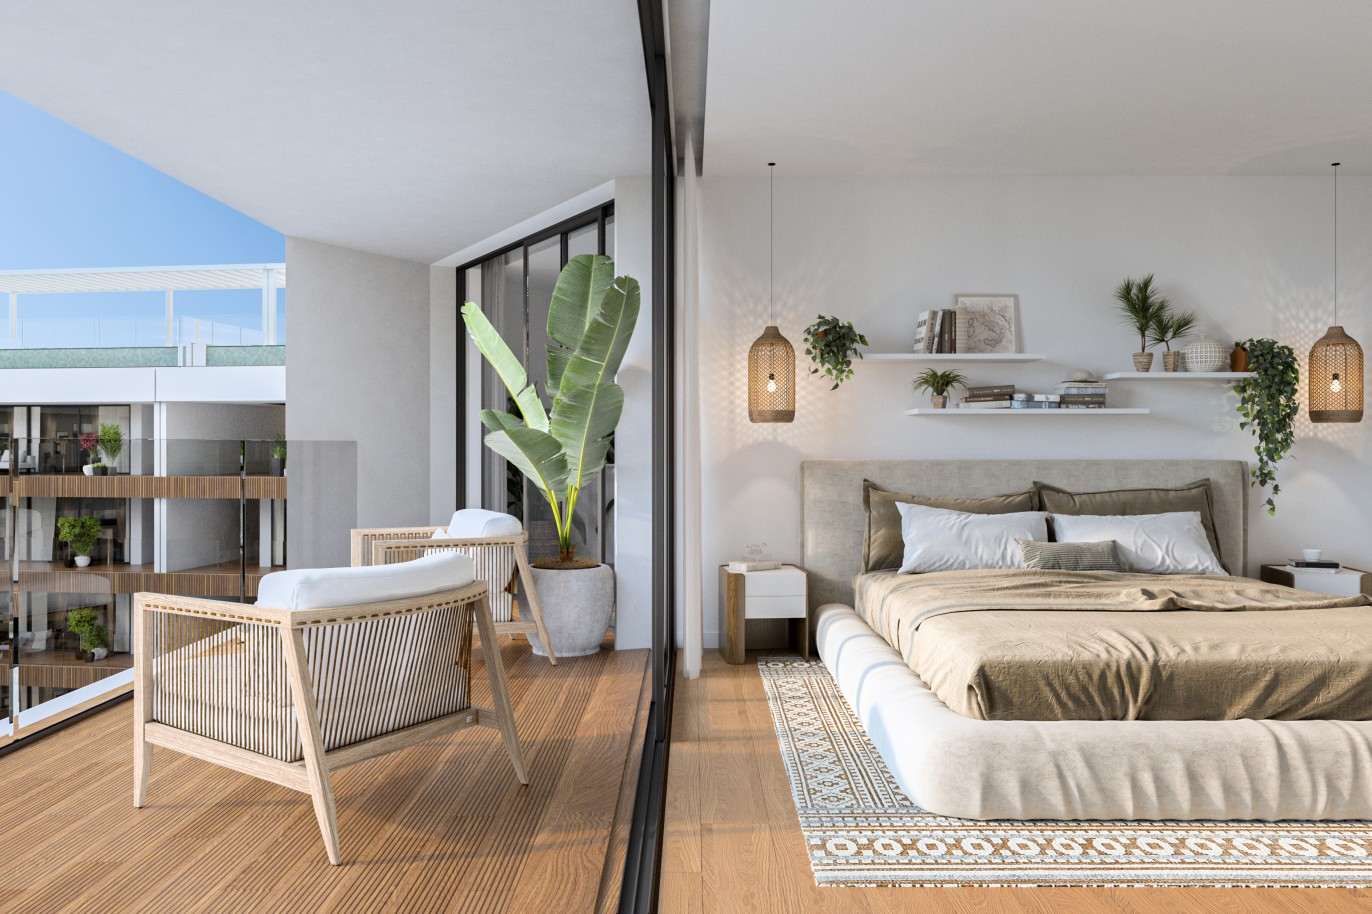 Appartements neufs avec vue sur mer, 1, 2 & 3 chambres, à vendre à Olhão, Algarve_244253